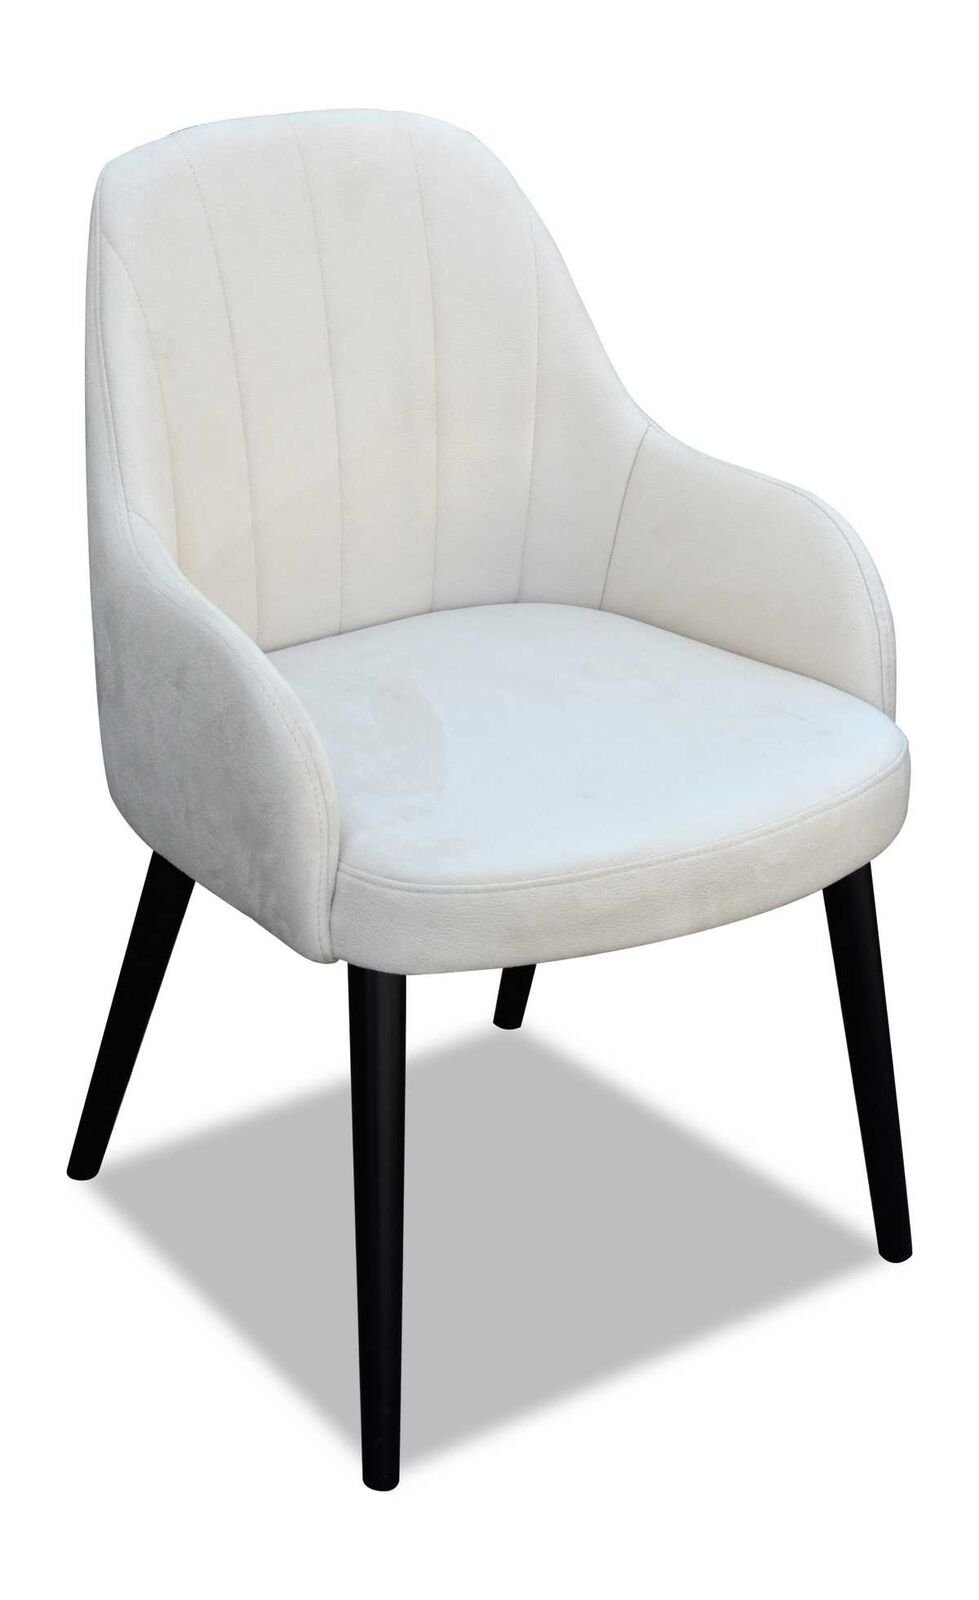 Textil Armlehne (1 Braun Esszimmerstuhl Weiß/Schwarz Luxus Lehnstuhl mit Stuhl St) JVmoebel Stuhl Design